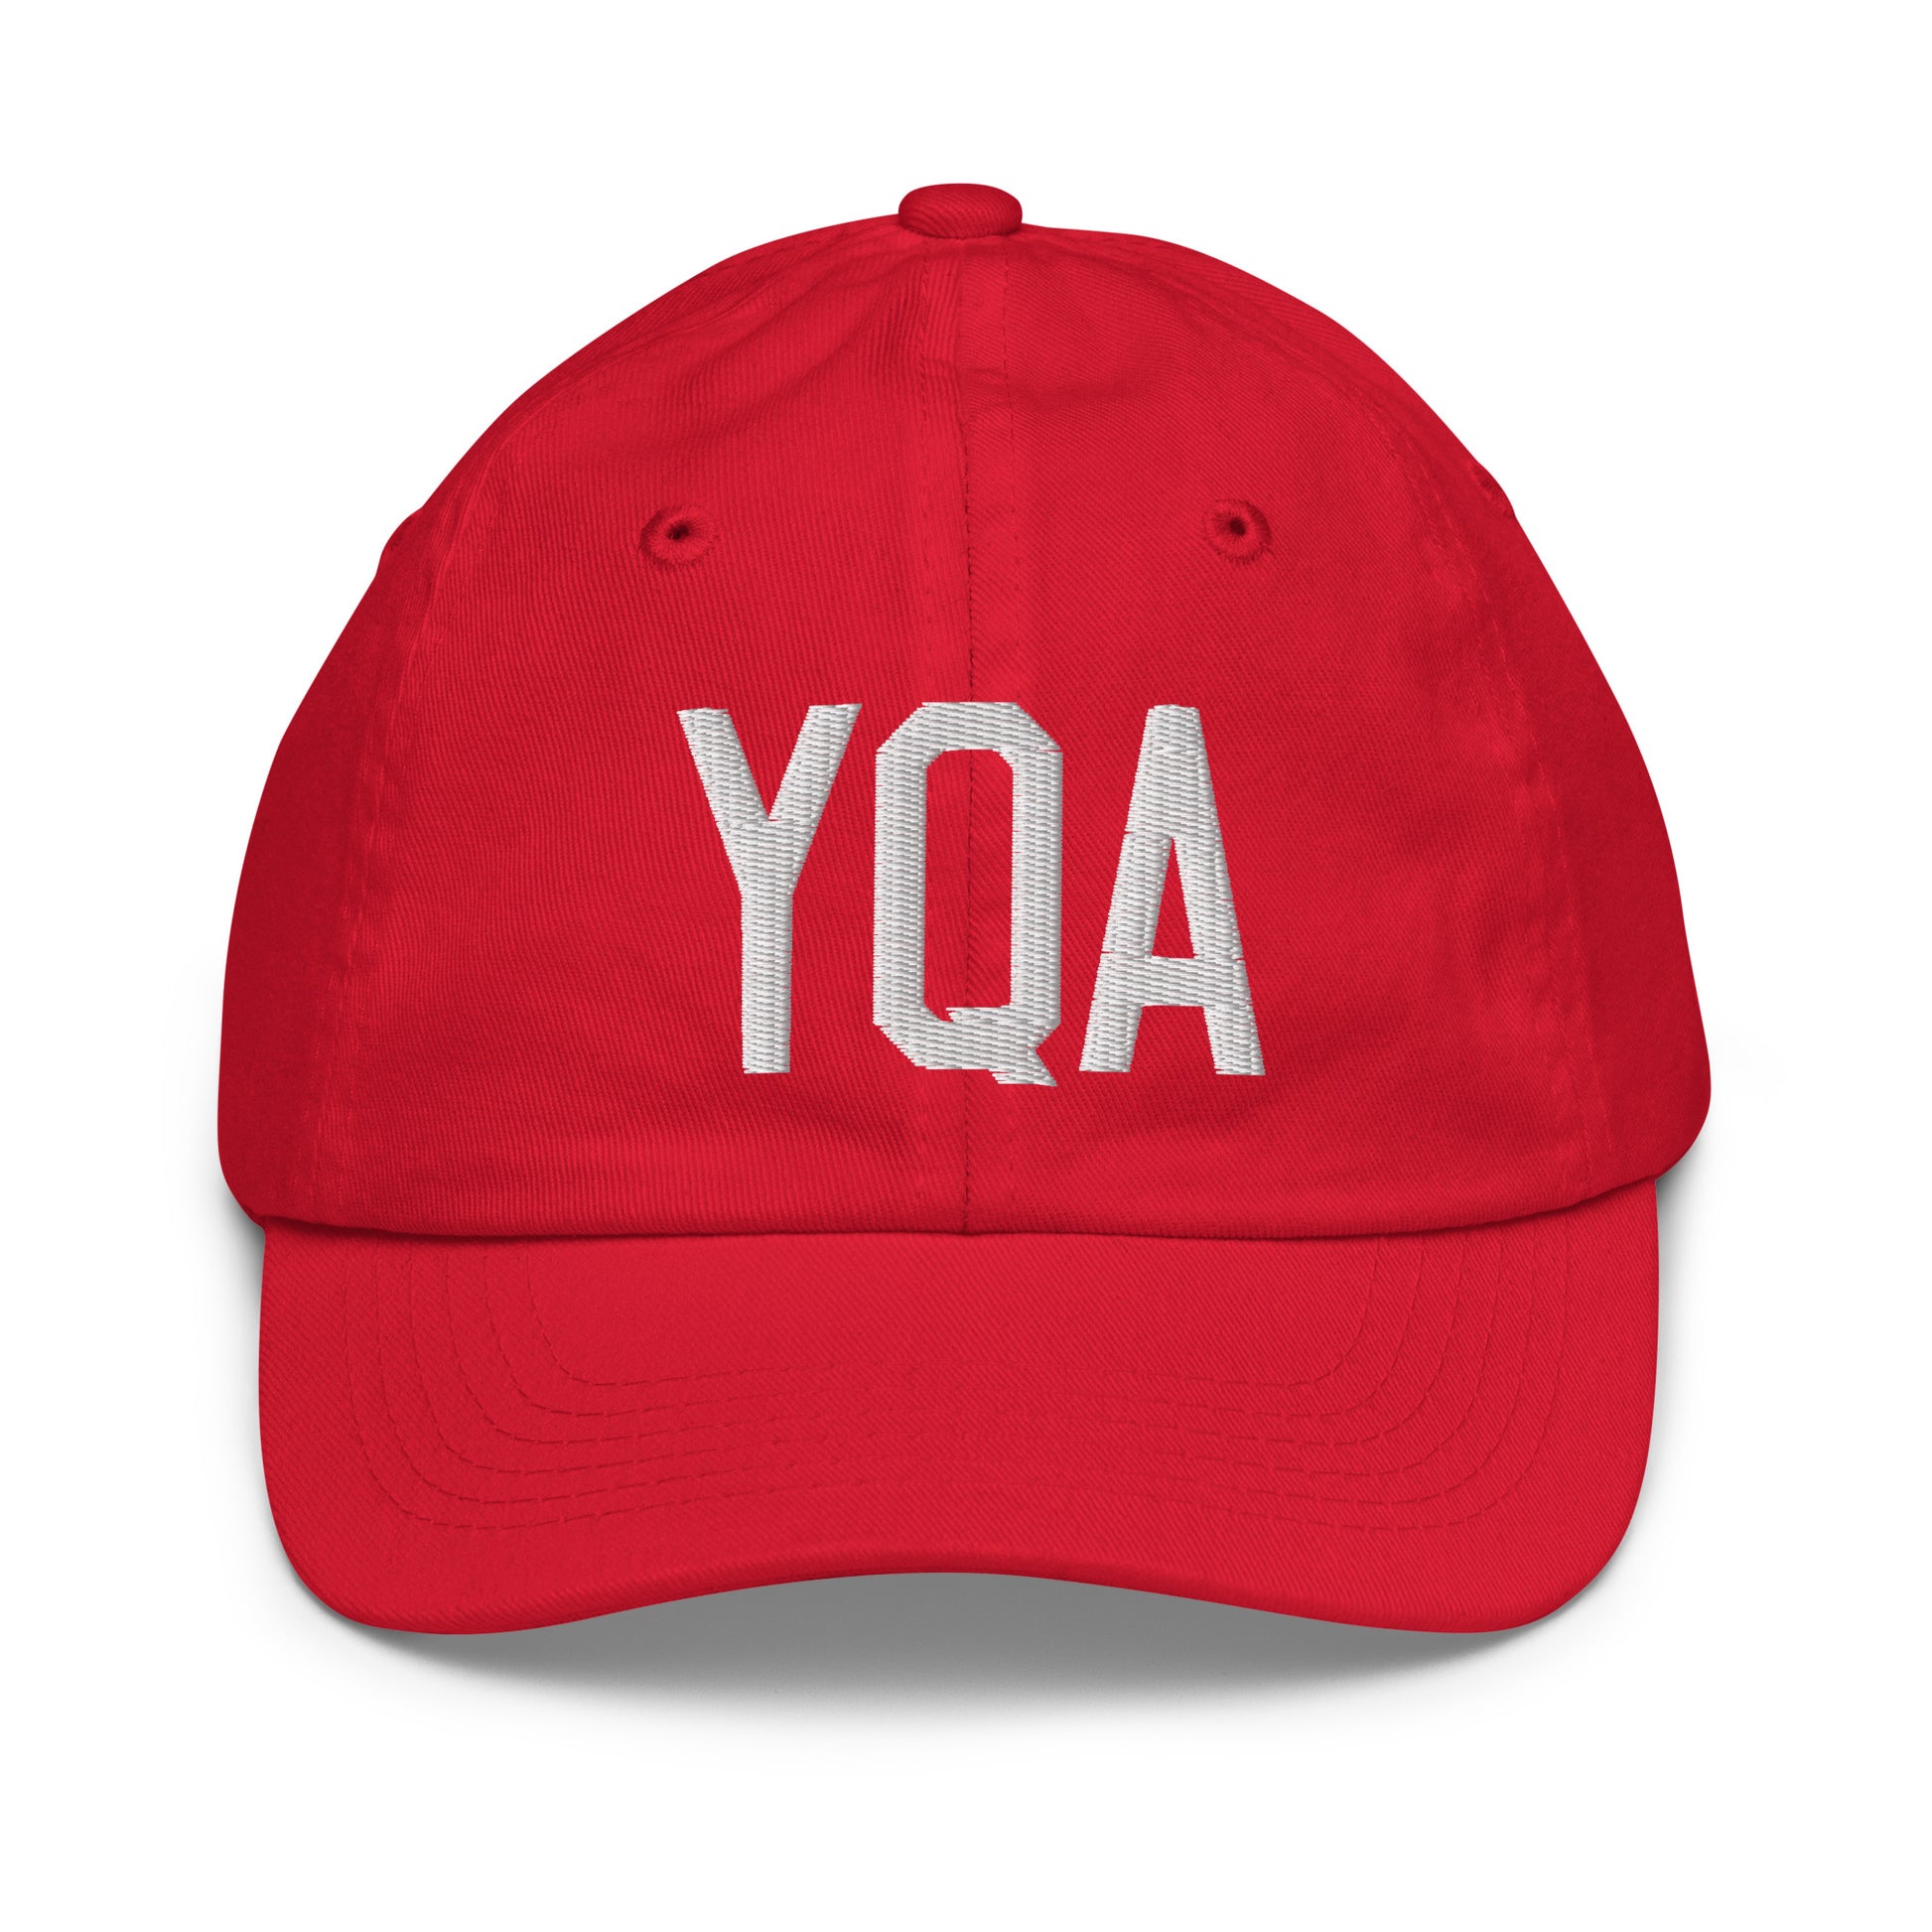 Airport Code Kid's Baseball Cap - White • YQA Muskoka • YHM Designs - Image 17